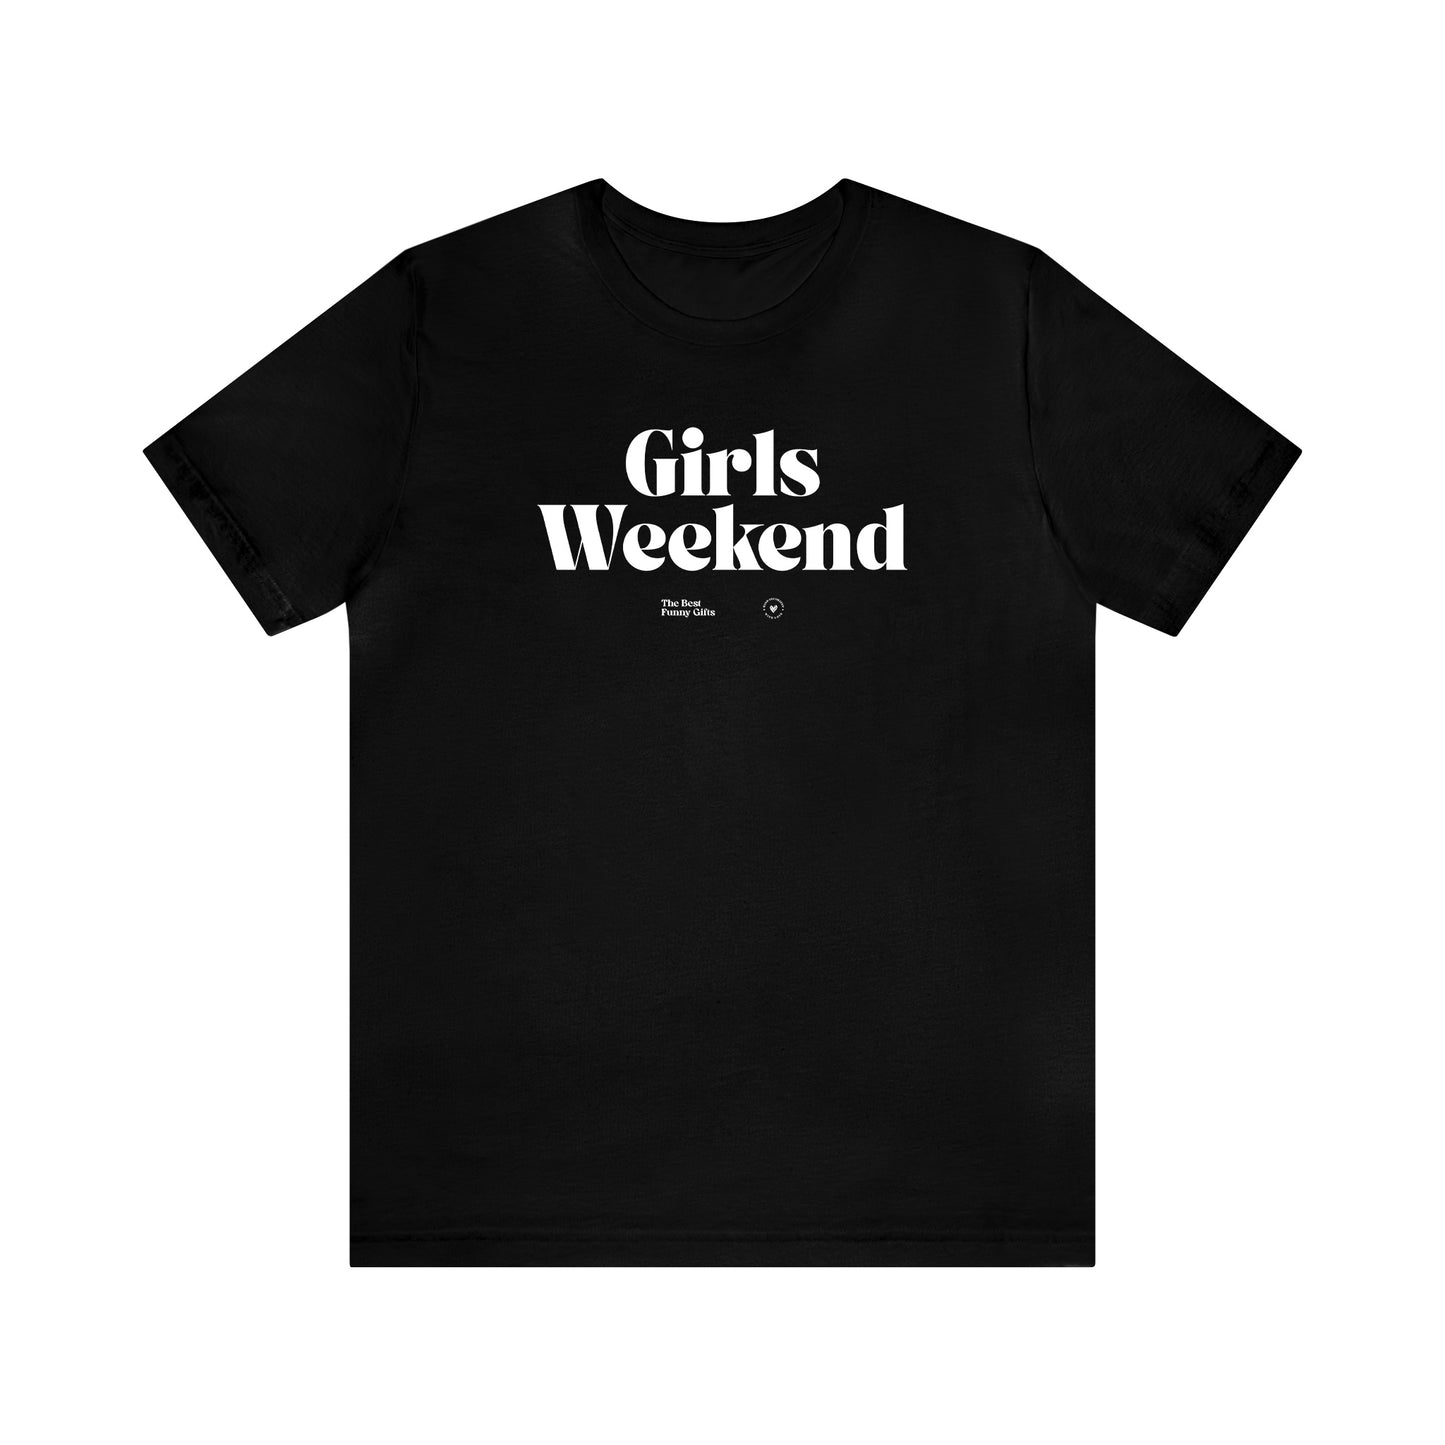 Funny Shirts for Women - Girls Weekend - Women’s T Shirts